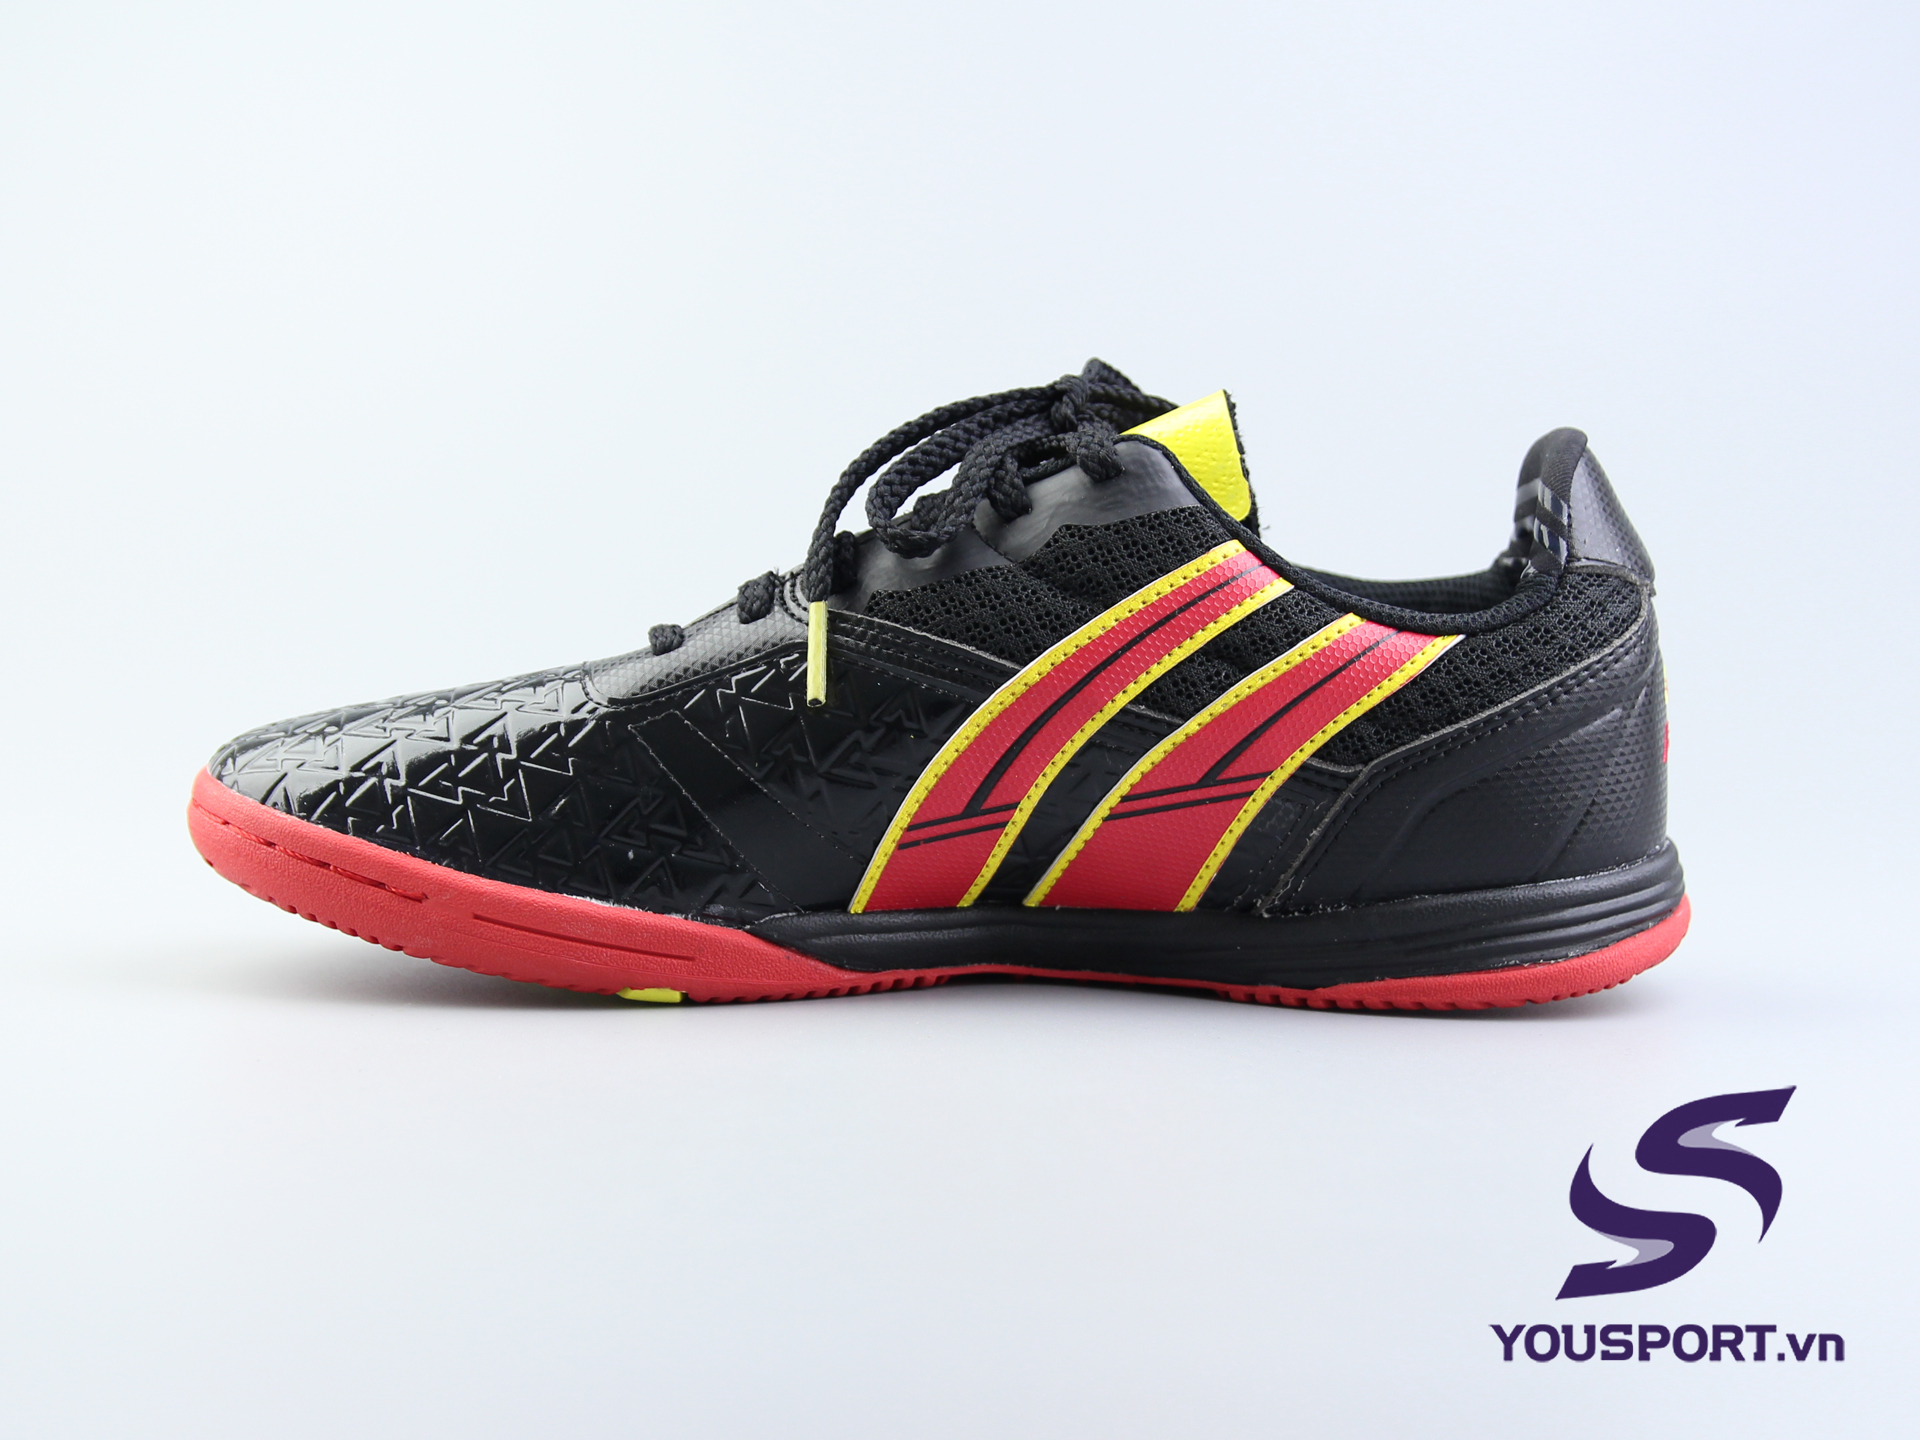 Giày Pan Vigor  LTD, Giày Pan cao cấp chính hãng Thái Lan | YouSport